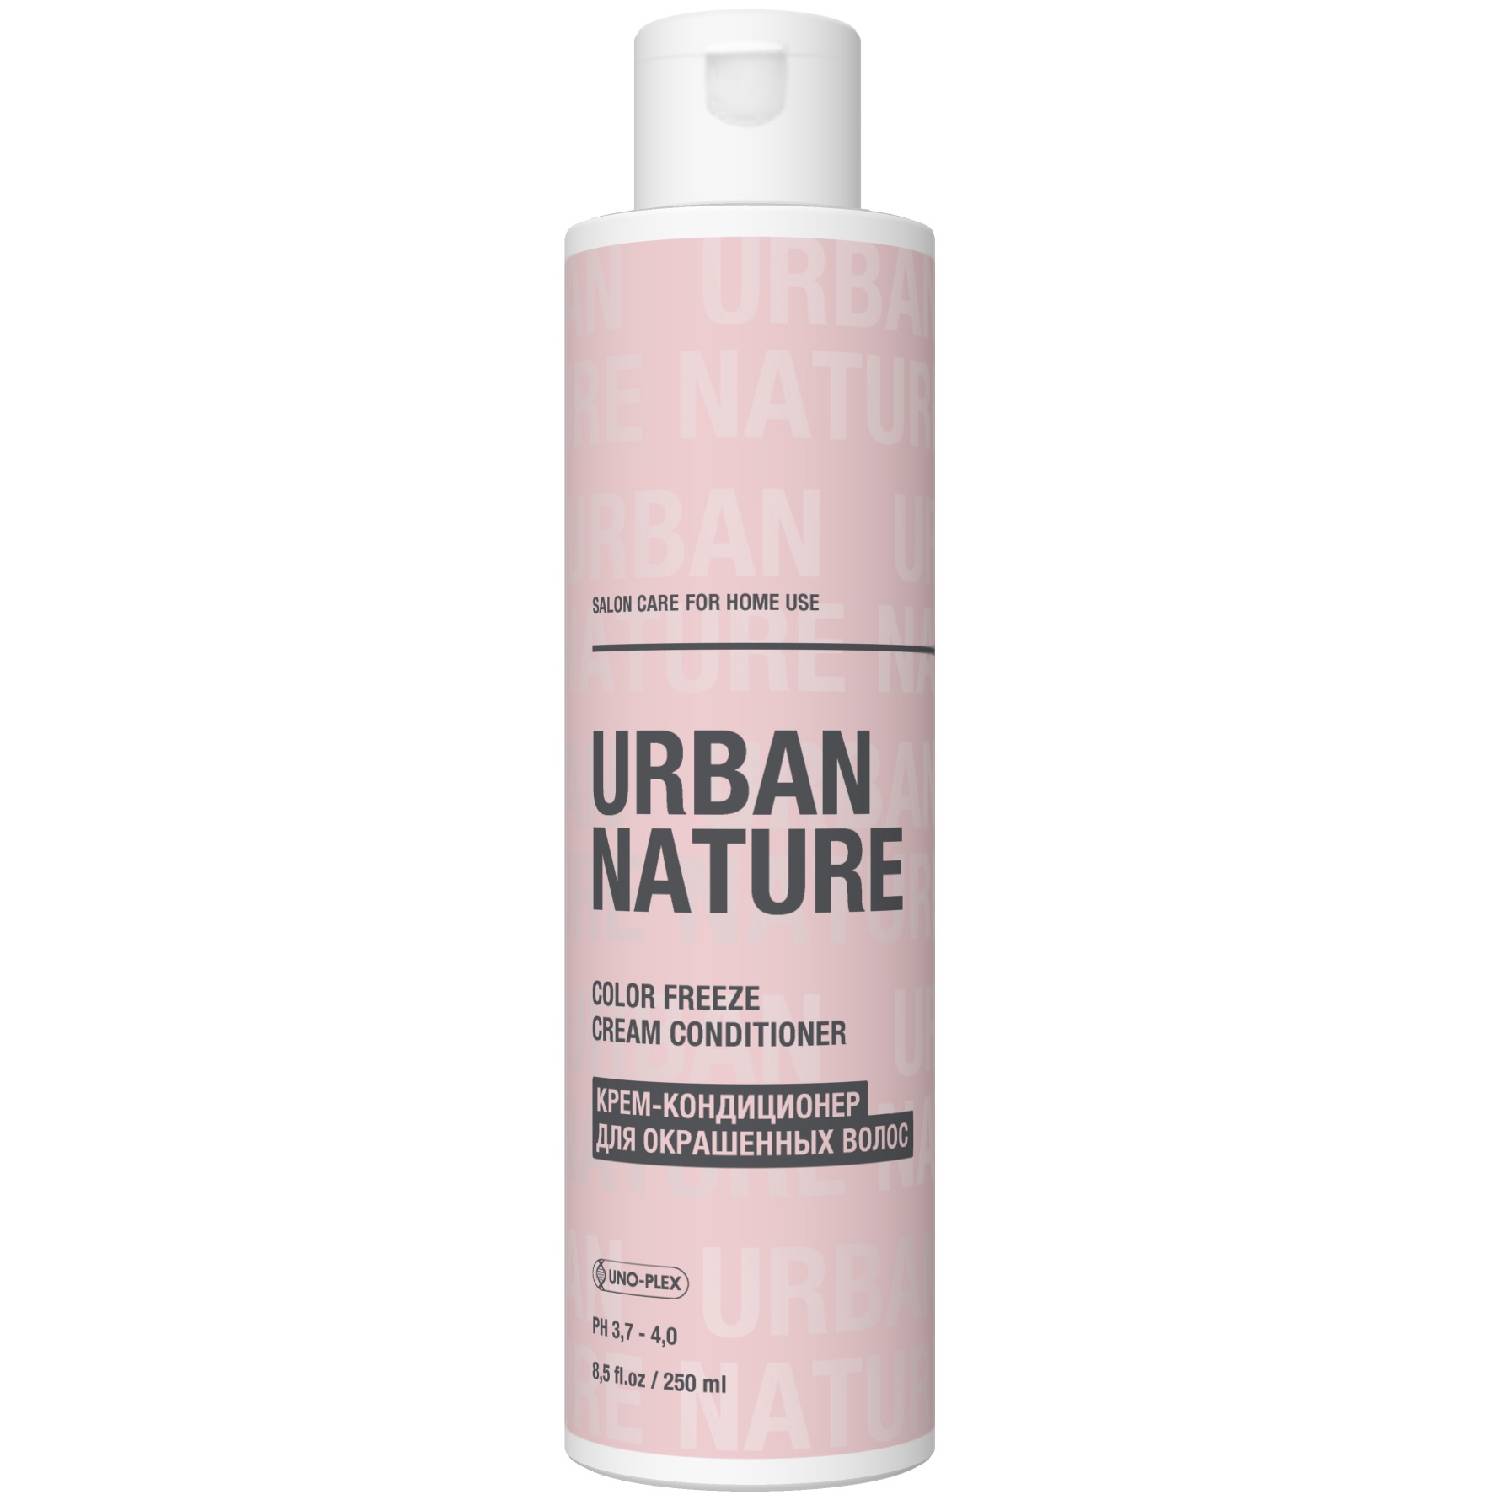 Urban Nature Крем-кондиционер для окрашенных волос, 250 мл (Urban Nature, Color Freeze)